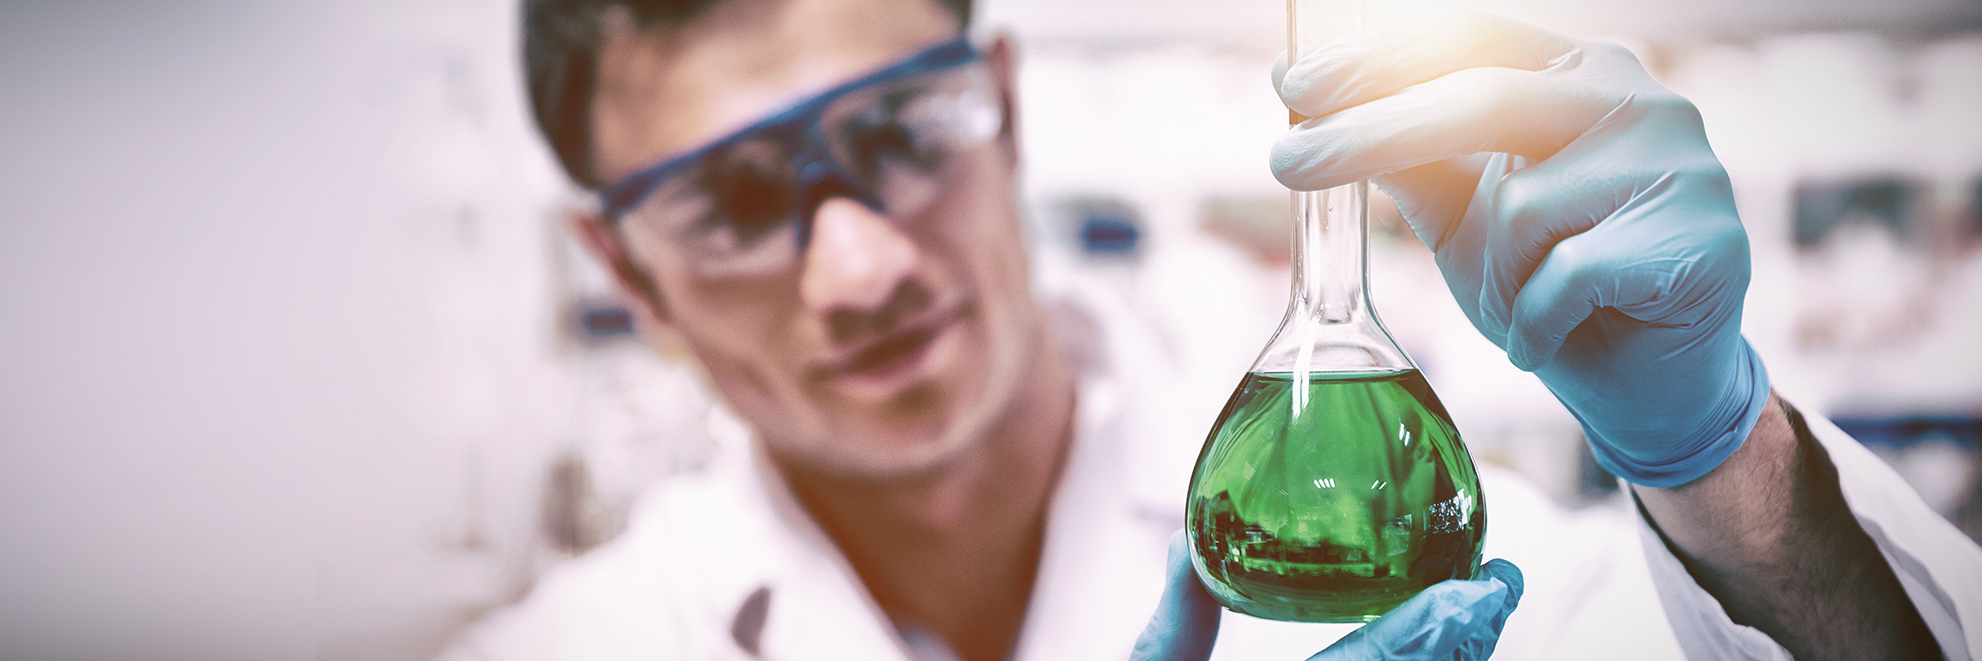 Chemikant mit Sicherheitsbrille, und Handschuhen, der ein mit einer grünen Flüssigkeit gefülltes Glas hält